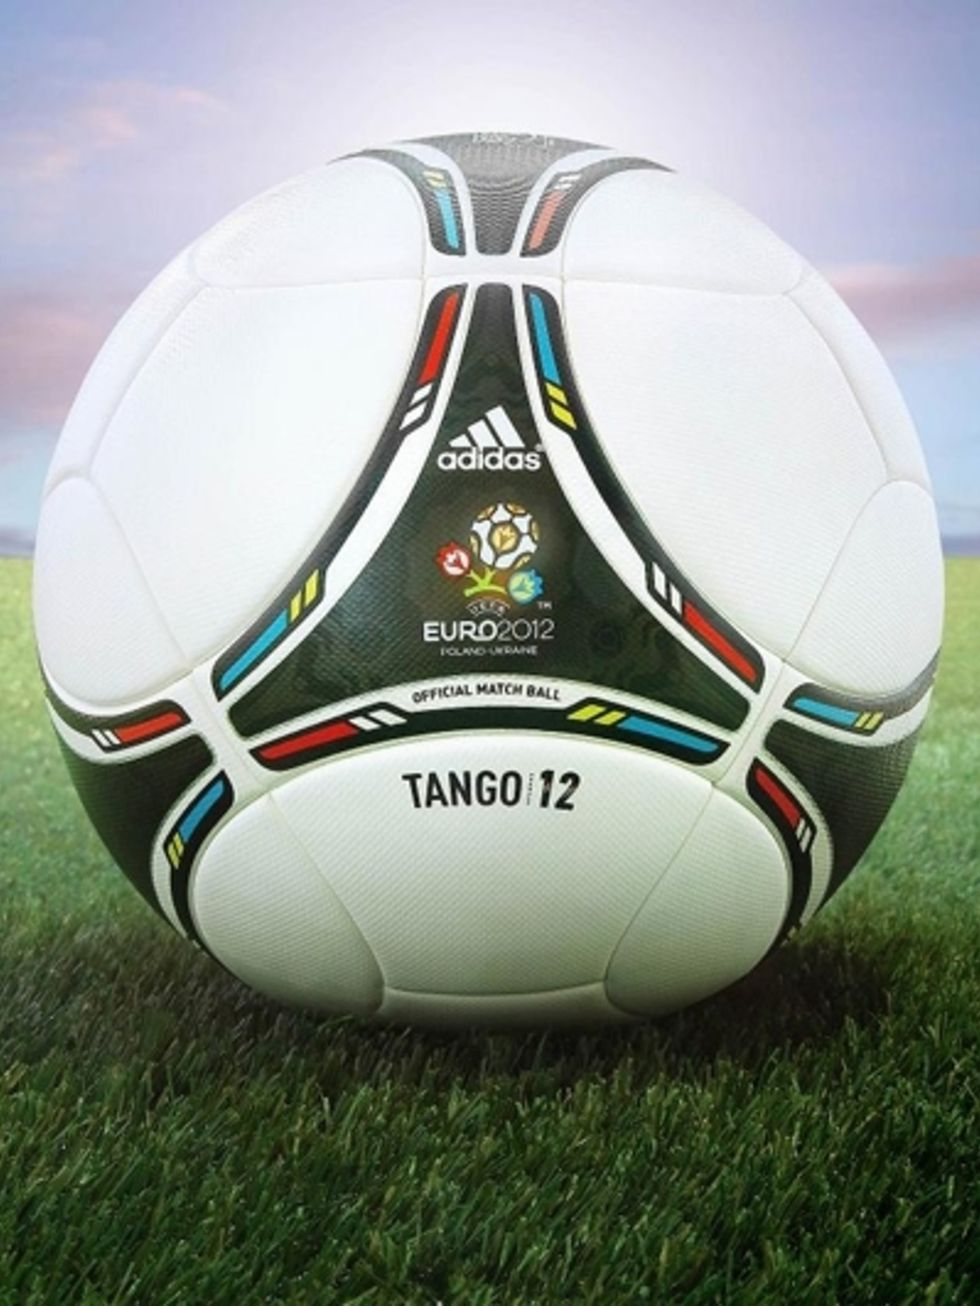 Soccer ball, Grass, Football, Sports equipment, Ball, Soccer, Logo, Ball, World, Pallone, 